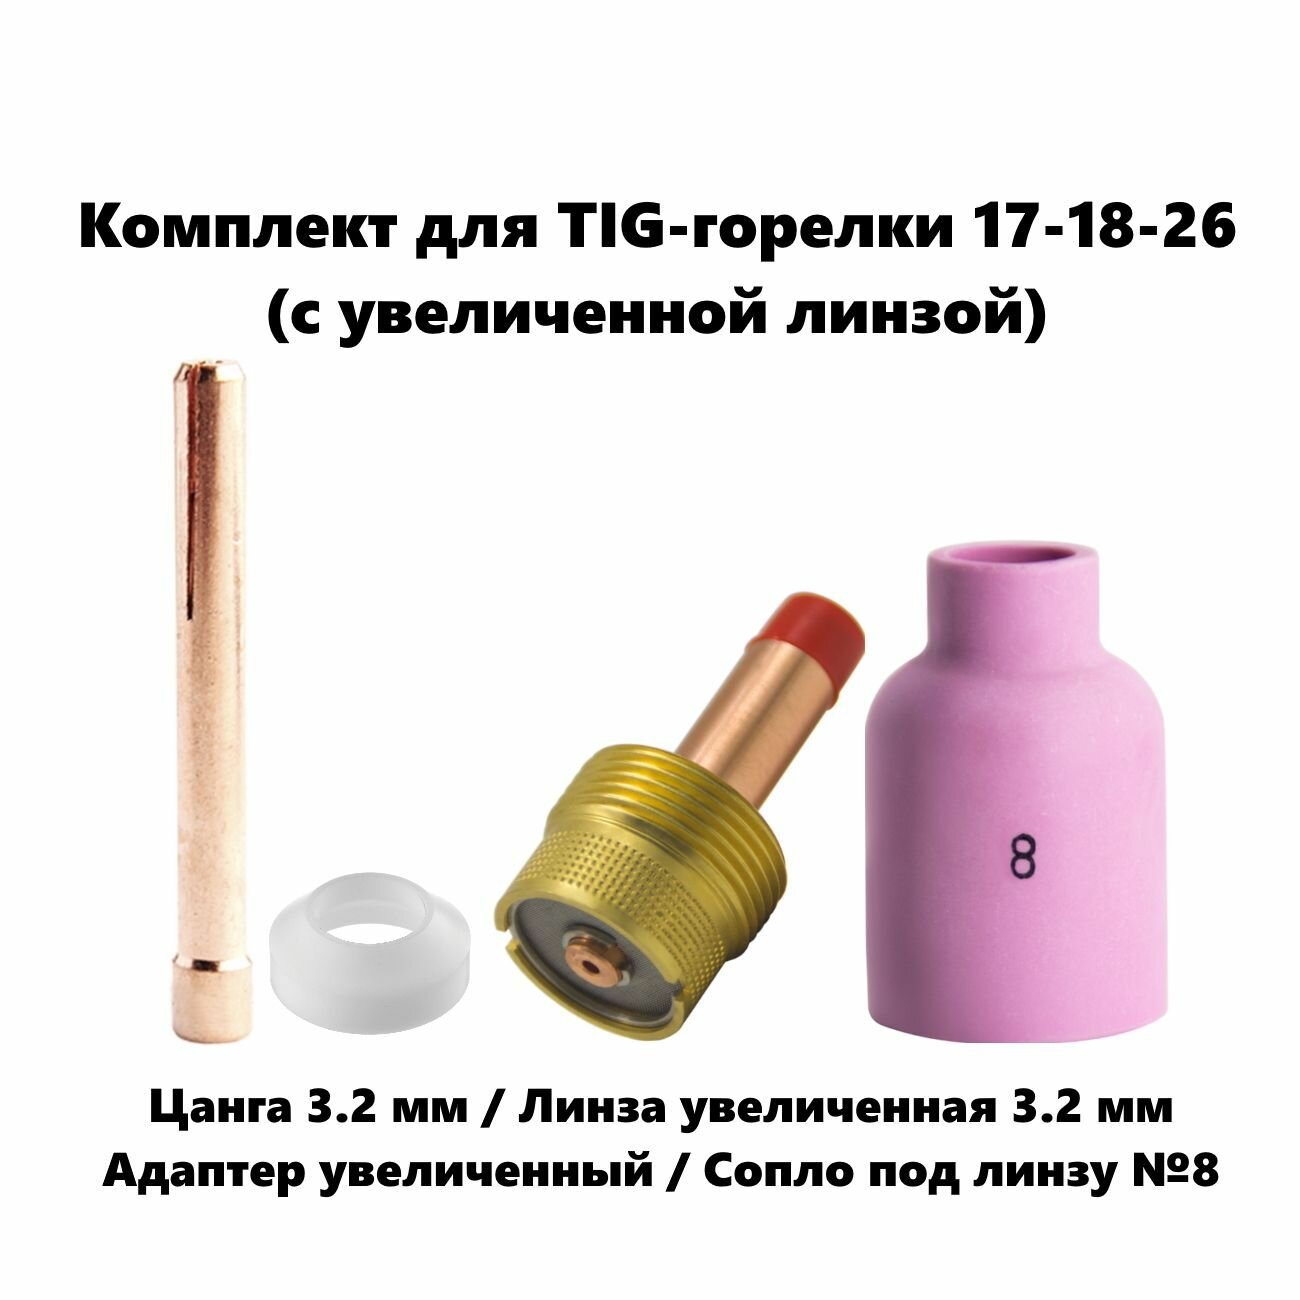 Набор 3.2 мм цанга Сопло керамическое №8 линза газовая увеличенная адаптер для TIG горелки (17-18-26)